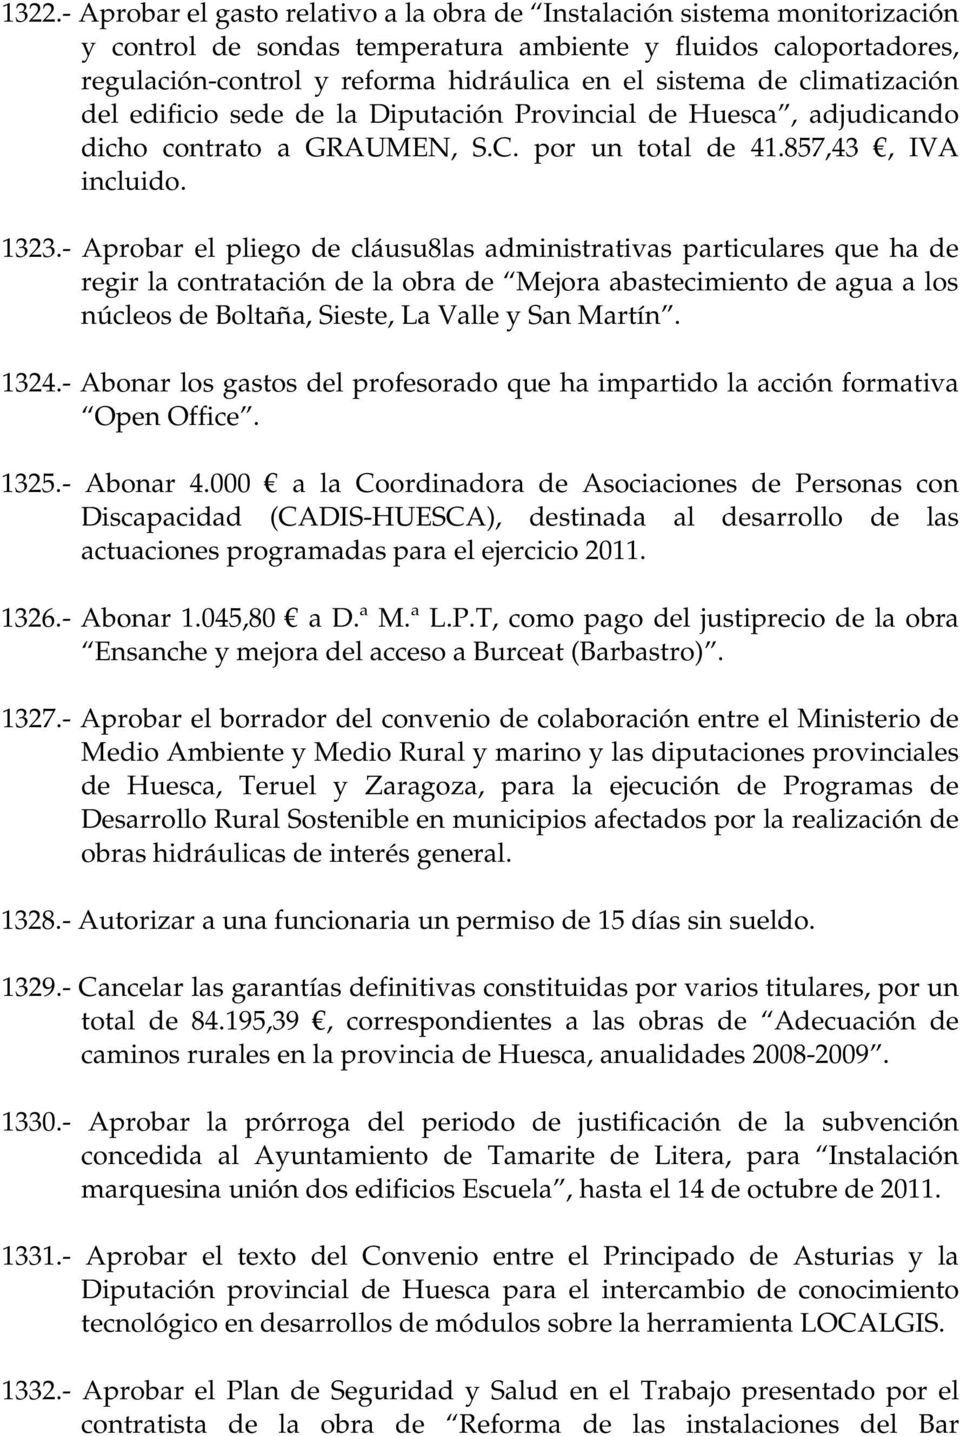 - Aprobar el pliego de cláusu8las administrativas particulares que ha de regir la contratación de la obra de Mejora abastecimiento de agua a los núcleos de Boltaña, Sieste, La Valle y San Martín.